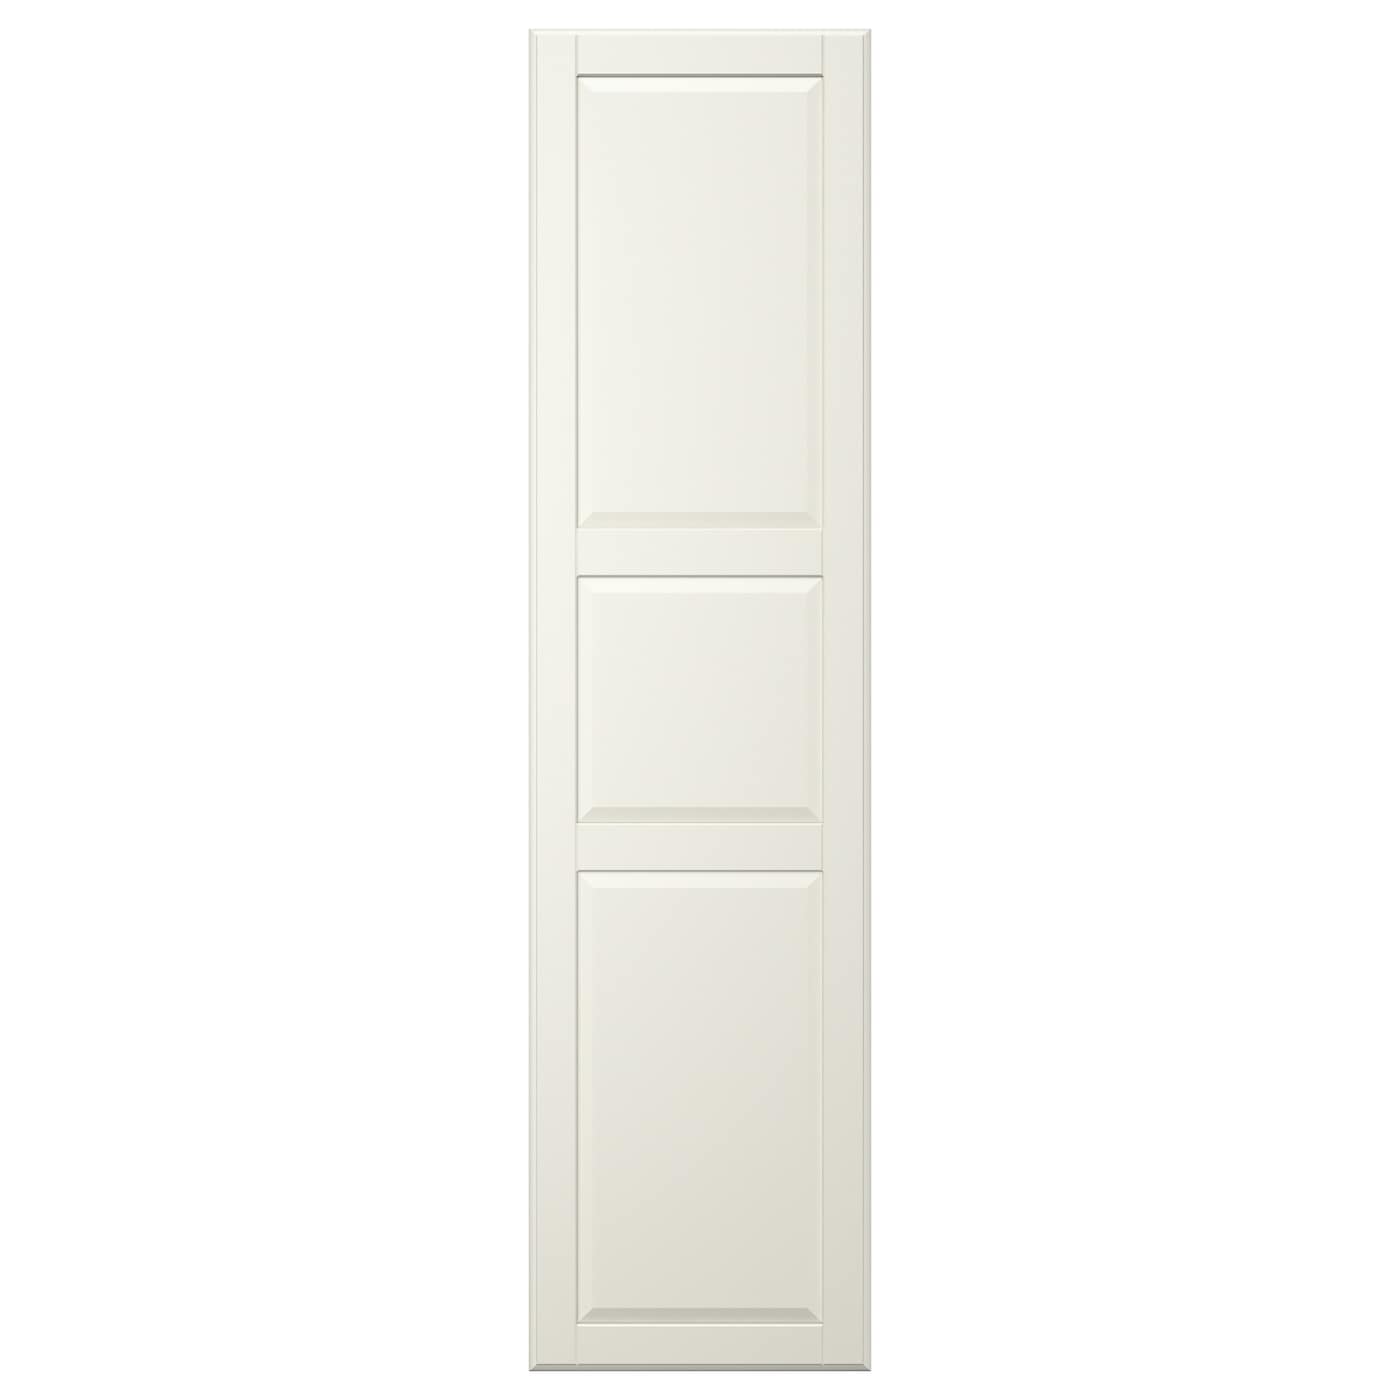 Дверь с петлями - TYSSEDAL  IKEA/  ТИССЕДАЛЬ ИКЕА,  195х50 см,  бежевый